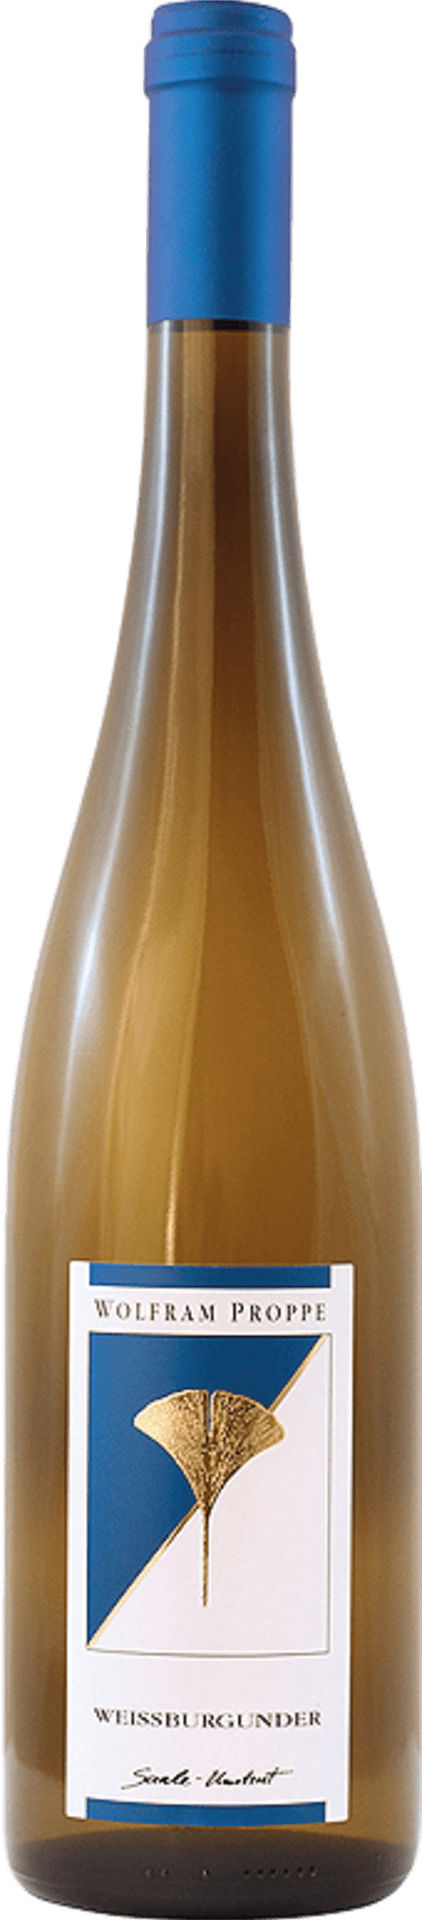 Weissburgunder Qualitätswein trocken